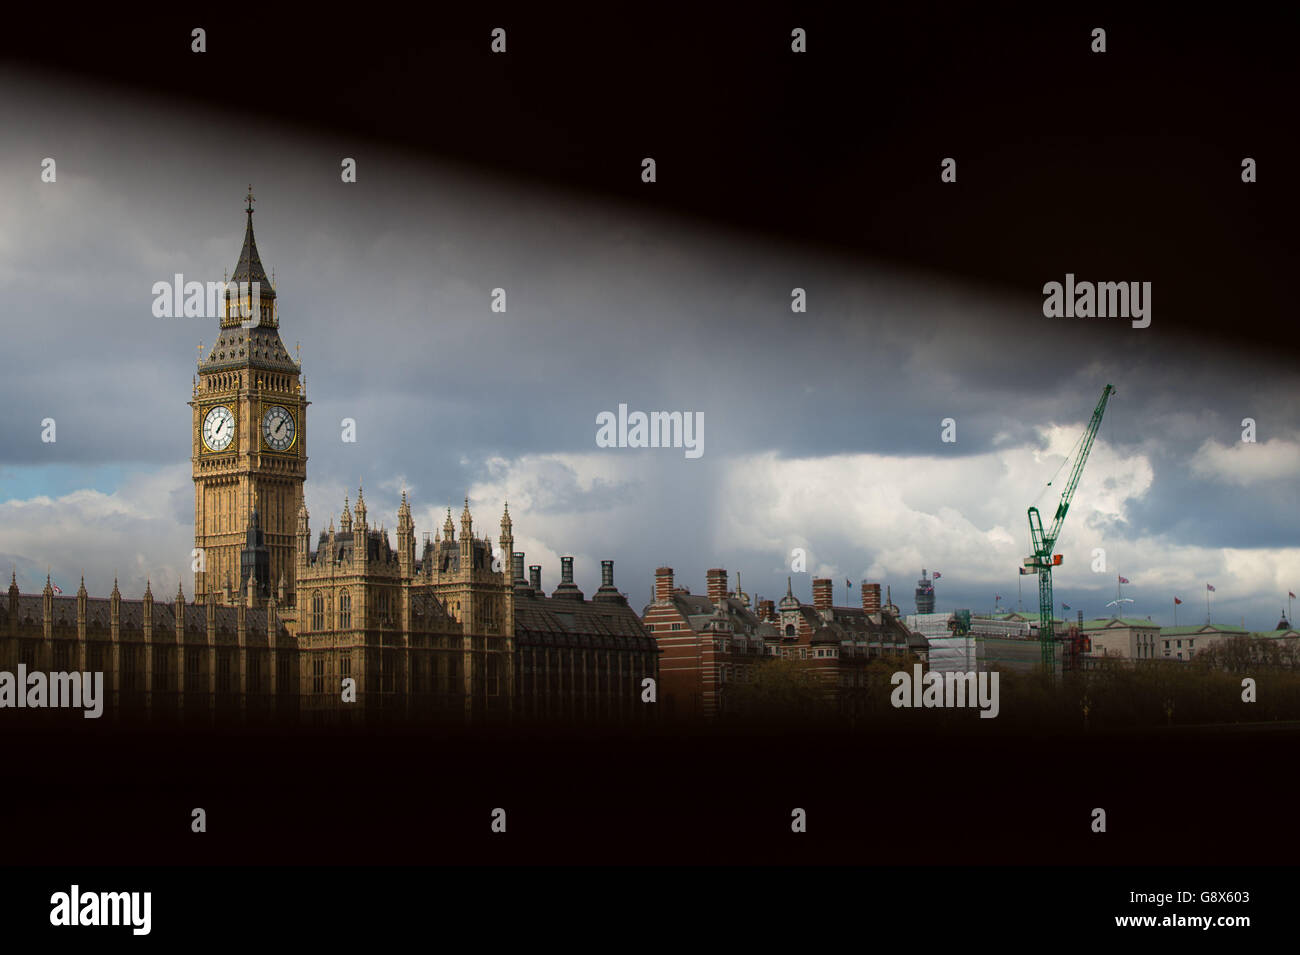 Una vista generale della Elizabeth Tower, che ospita il Big ben, presso la House of Commons di Westminster, Londra, che sarà silenziato per diversi mesi come parte di un &Acirc;£29 milioni di programma per riparare la faccia e il meccanismo dell'orologio, nonché crepe nella muratura torri. Foto Stock